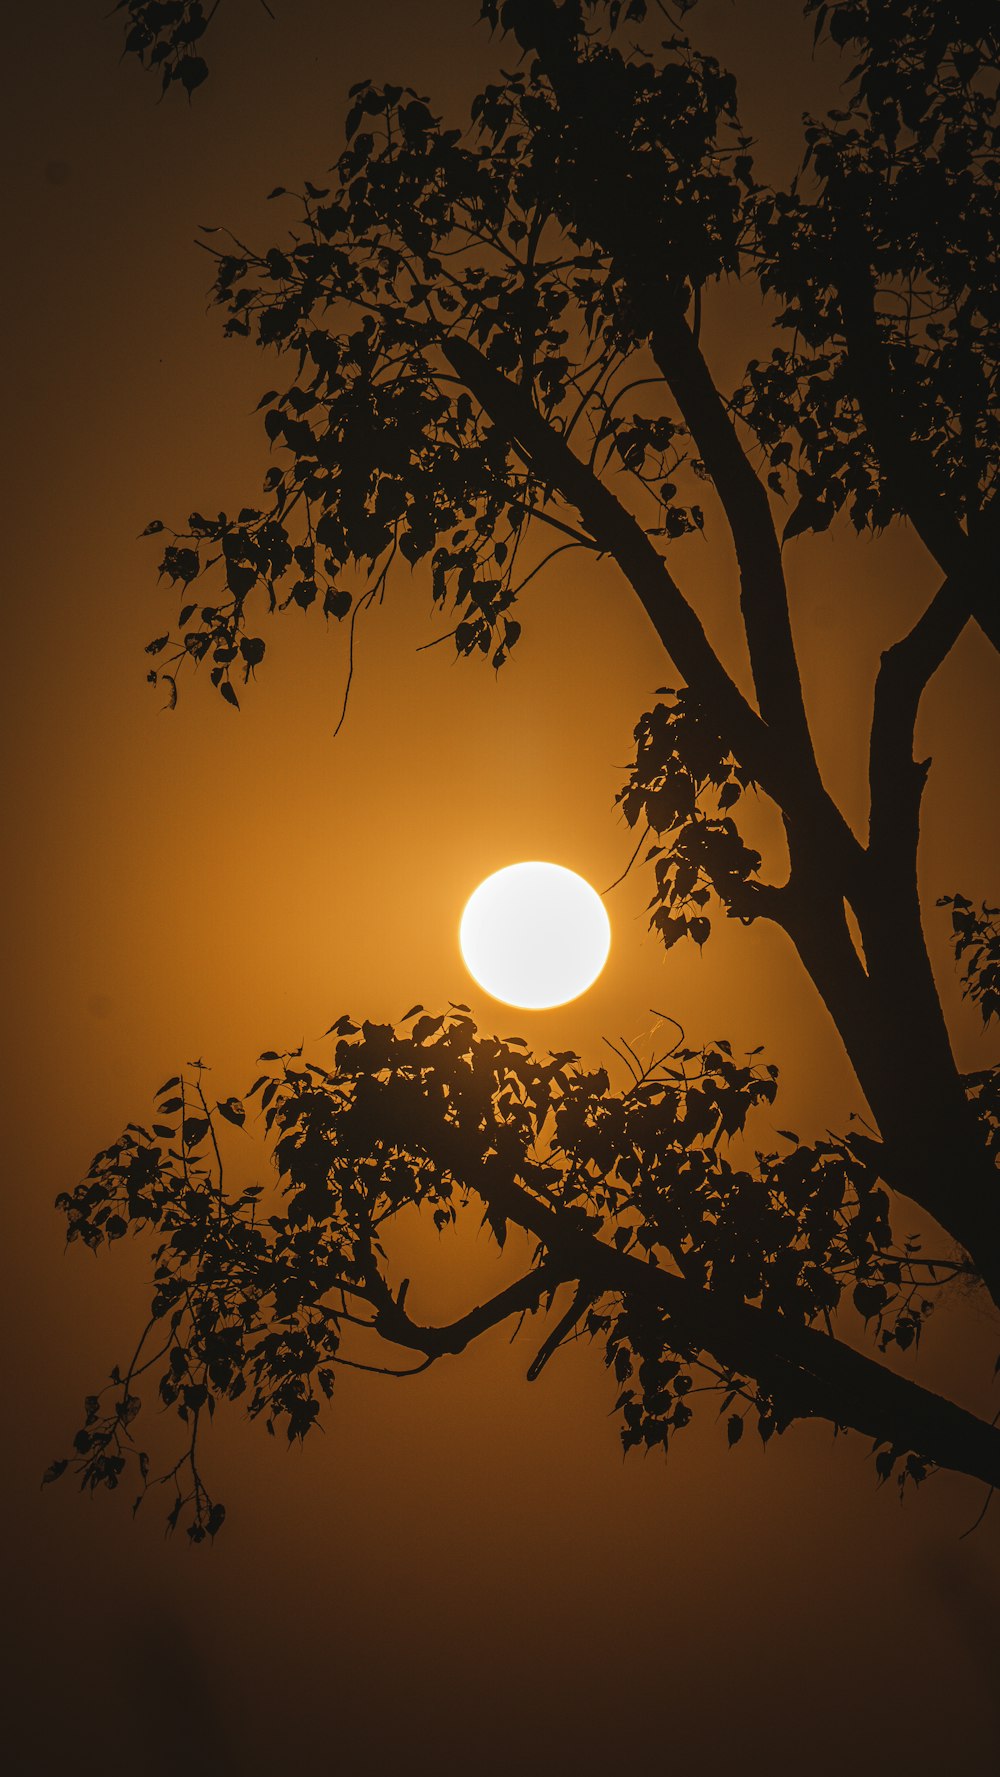 Il sole sta tramontando dietro un albero nella nebbia